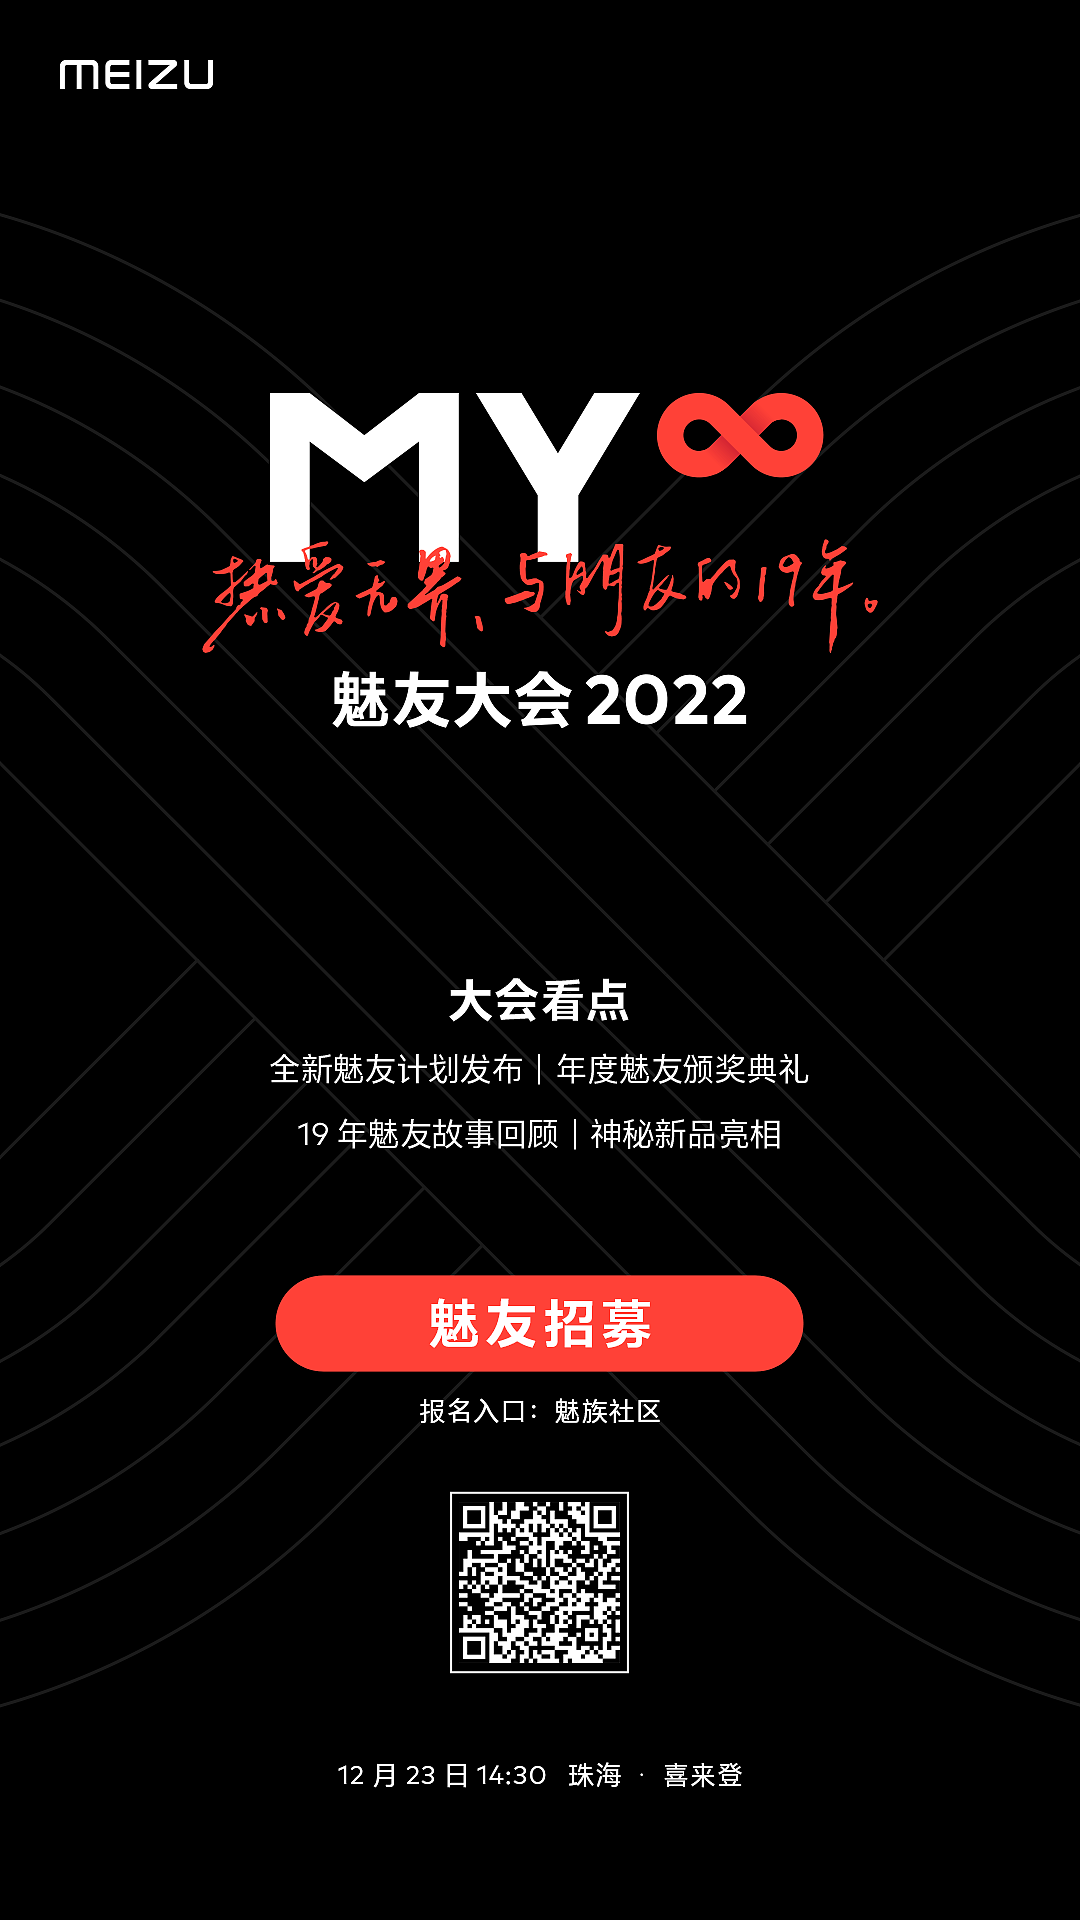 魅族将在 12 月 23 日的魅友大会 2022 上与用户交流“魅族 19”，还有神秘新品亮相 - 2